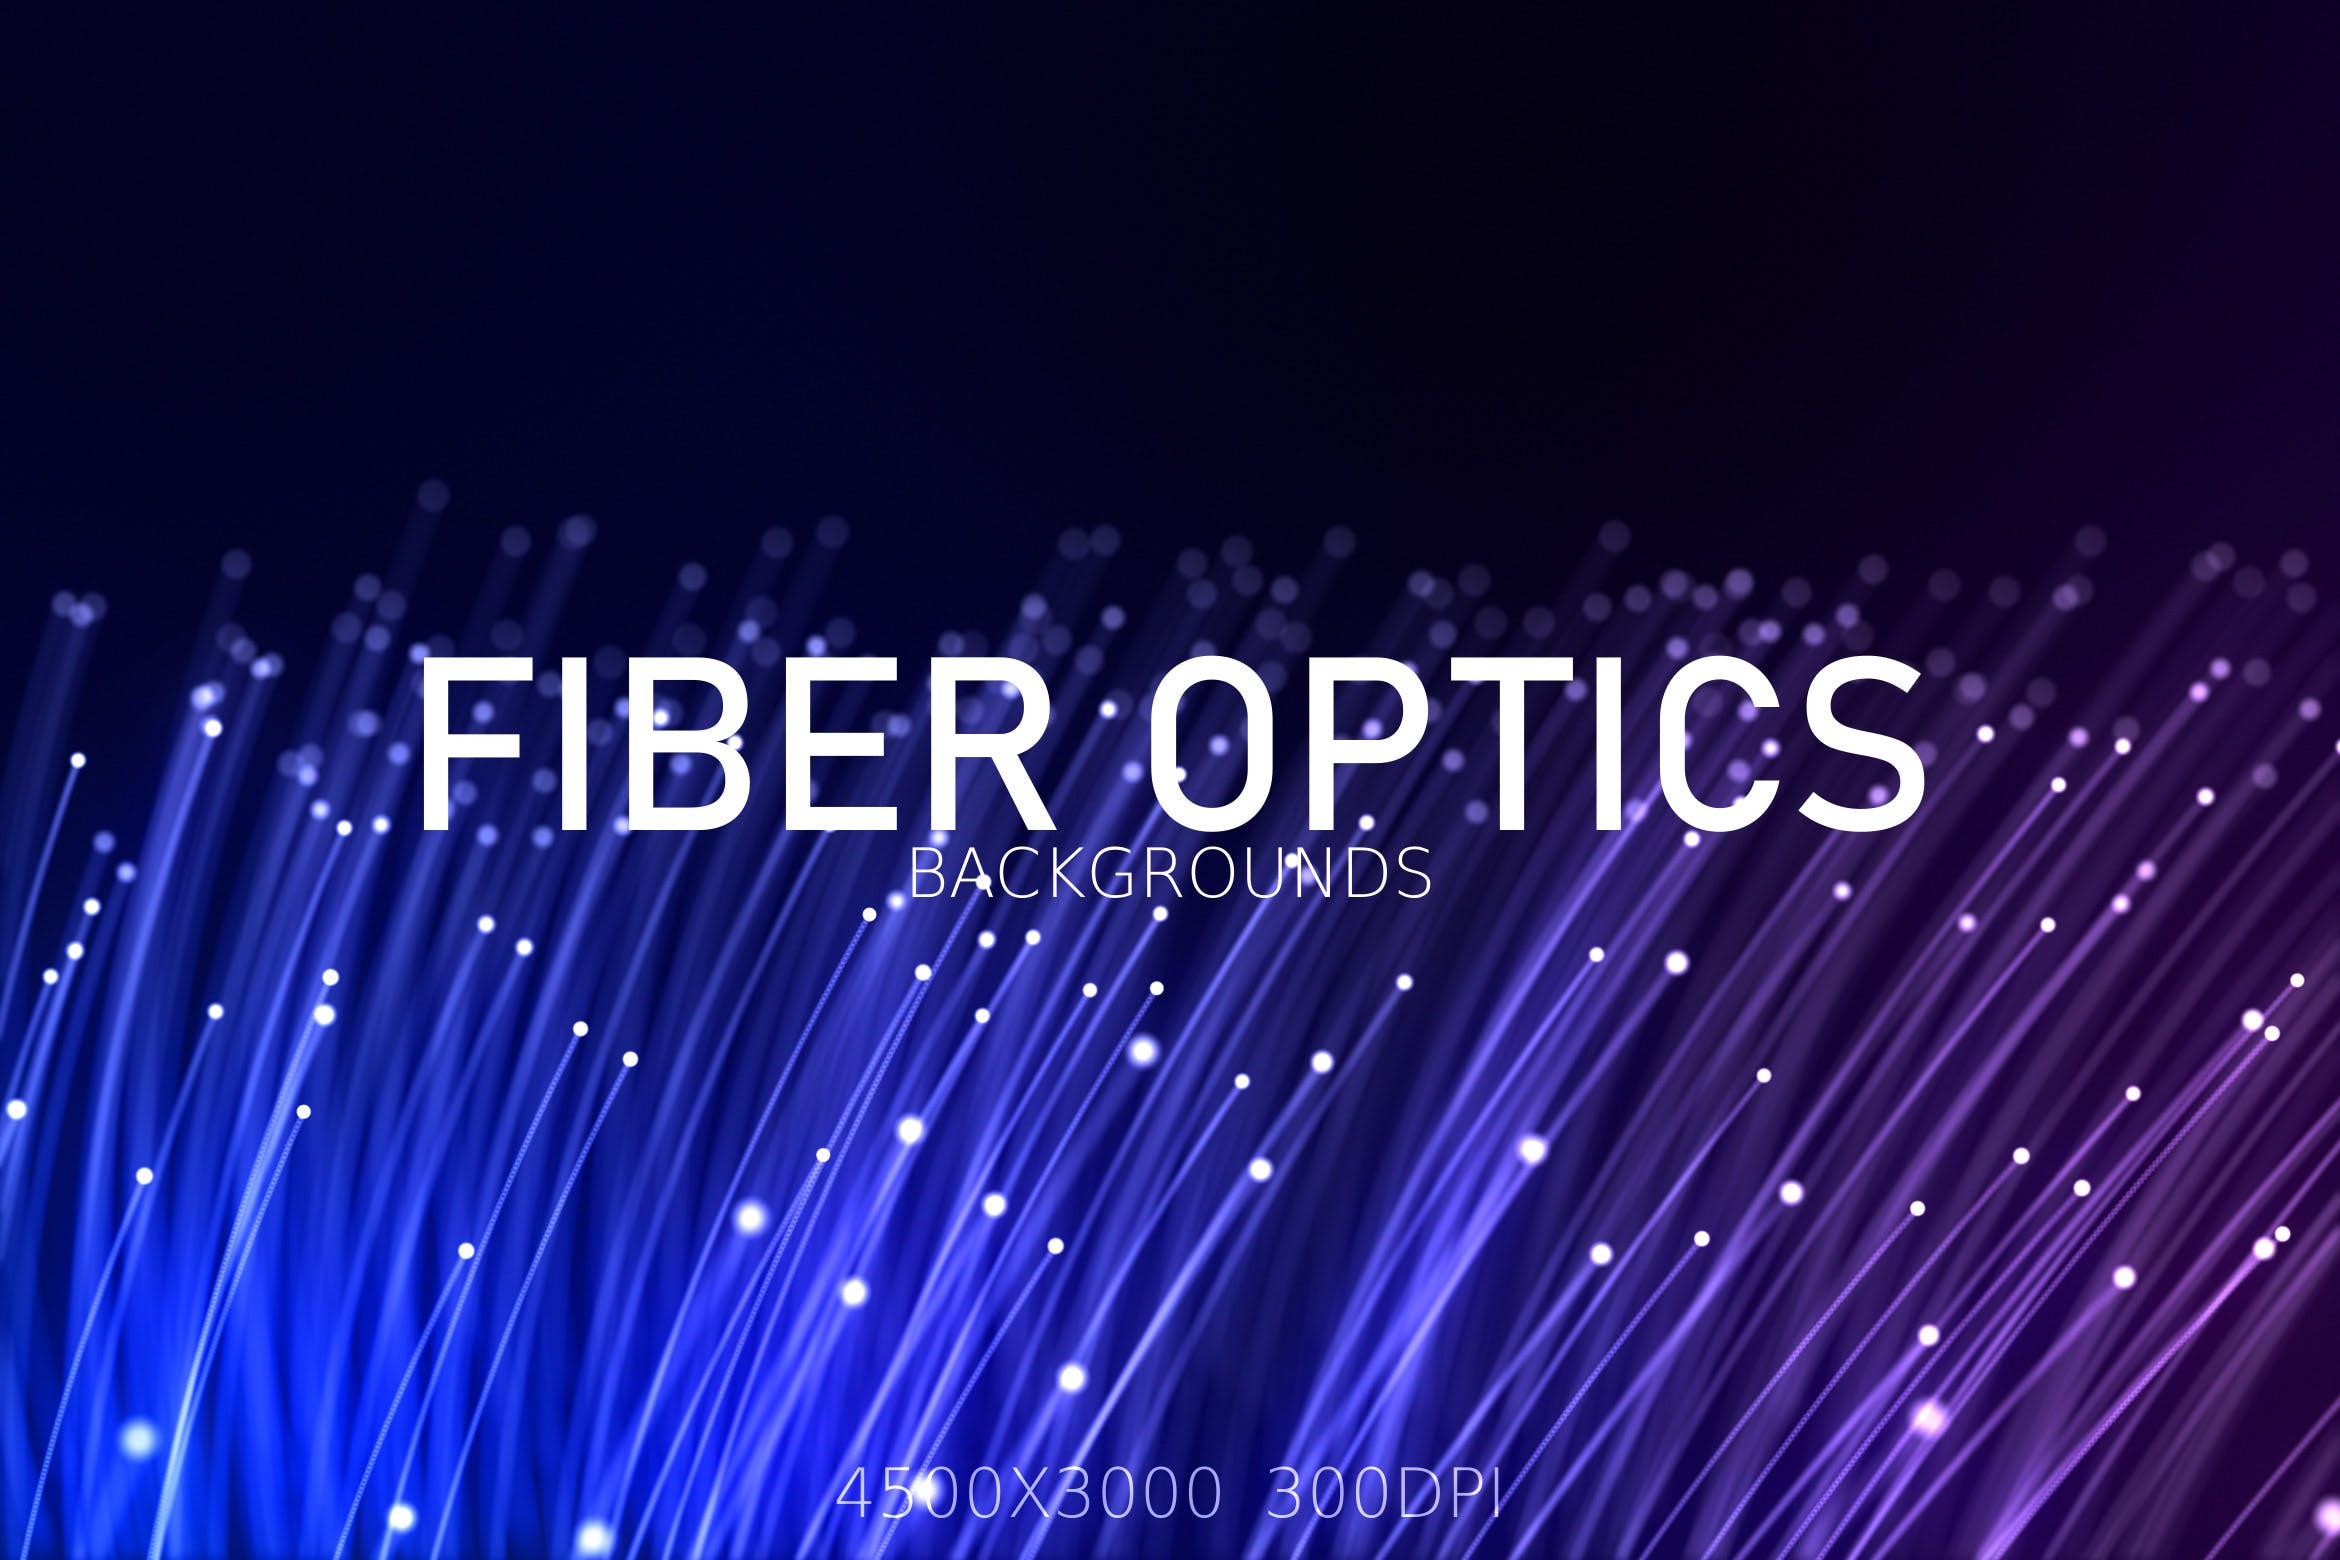 高清高科技主题光纤背景图片素材 Fiber Optic Background插图